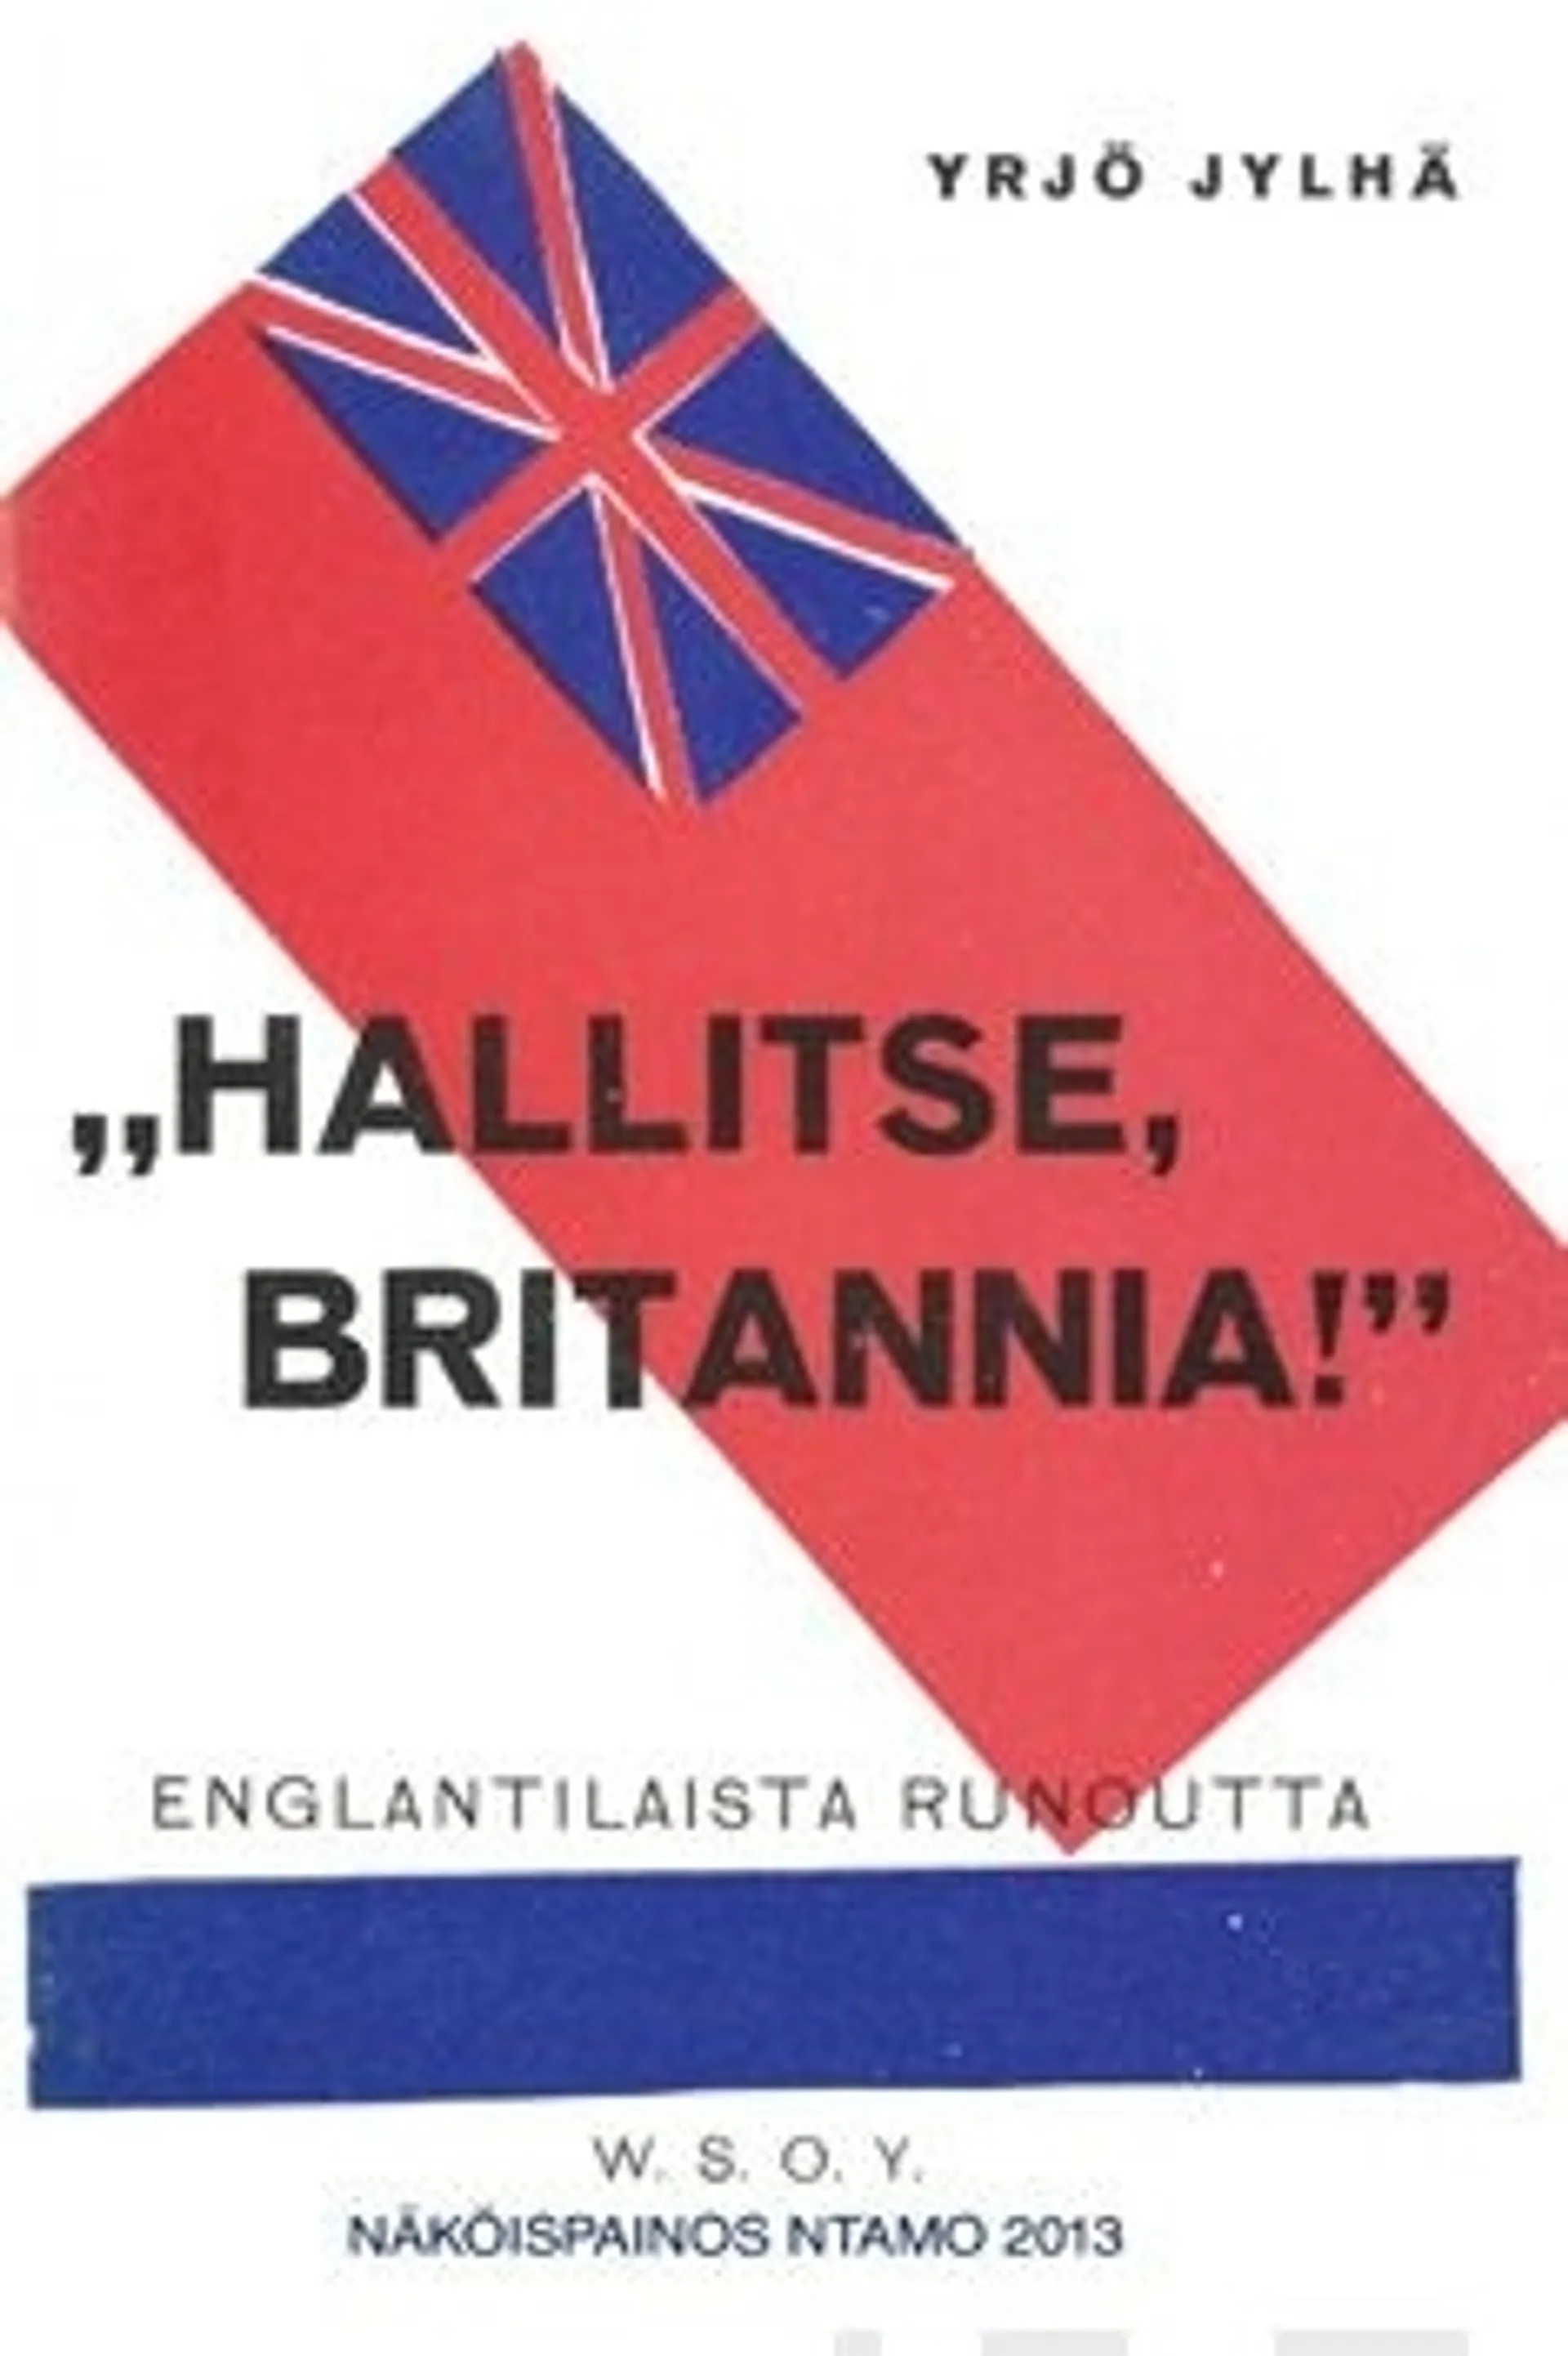 "Hallitse, Britannia!"